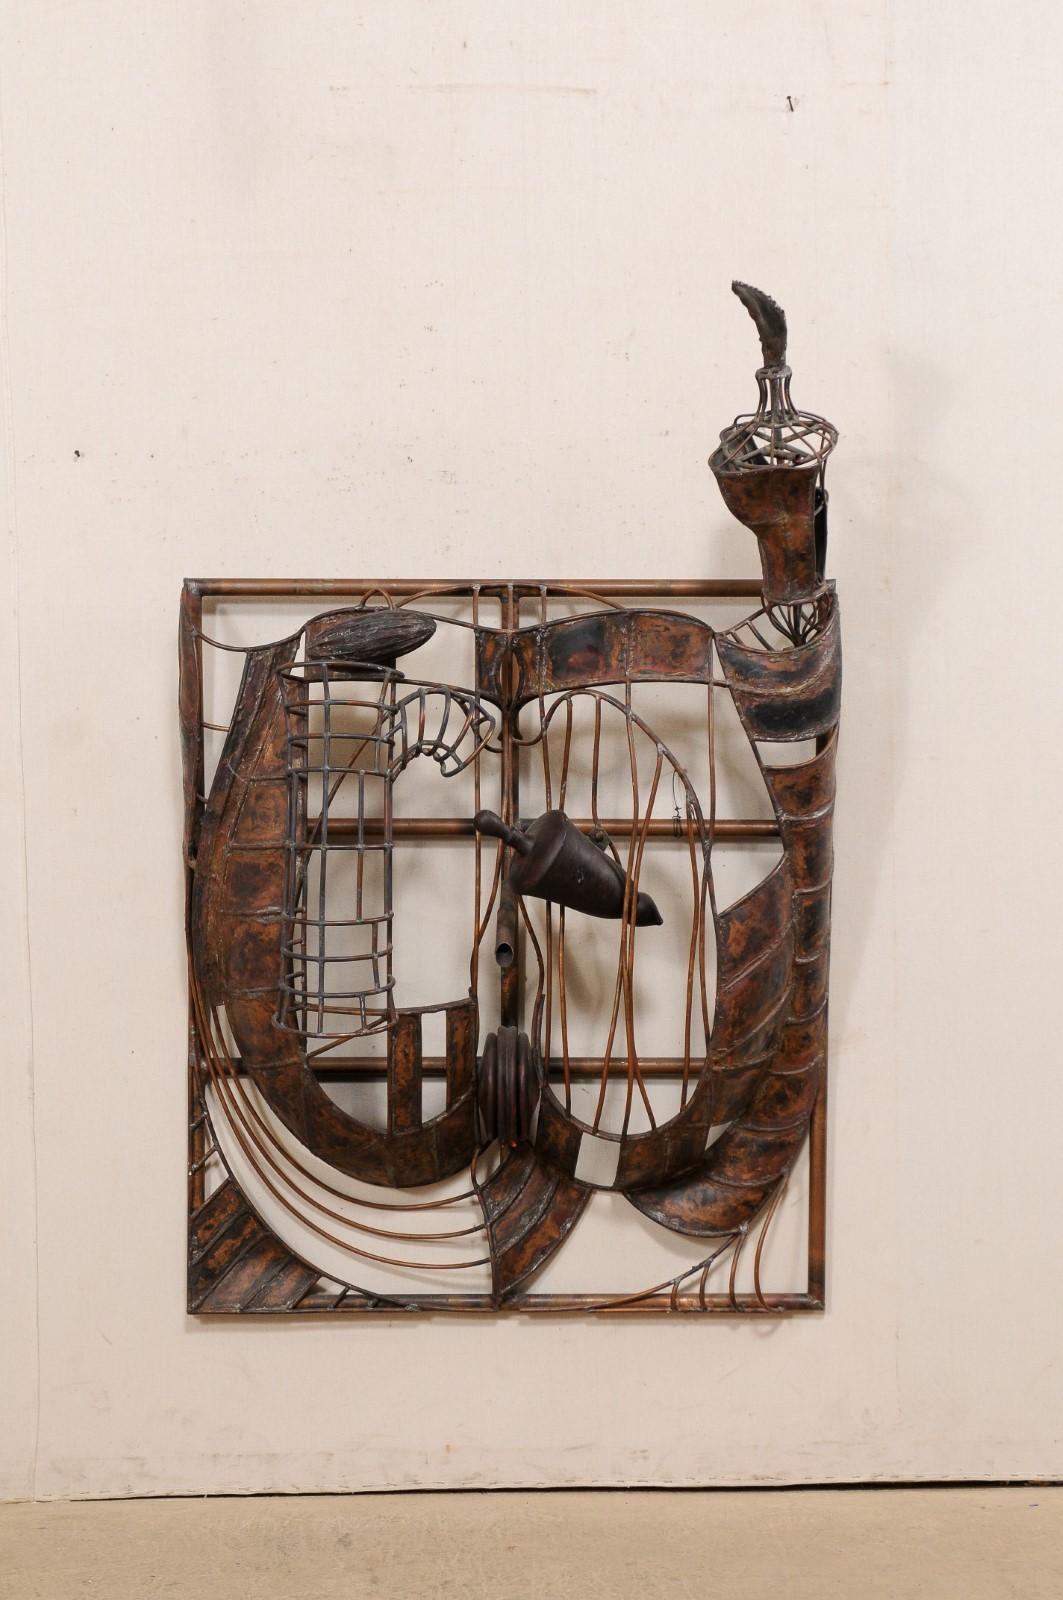 Cette pièce fantaisiste est une sculpture murale abstraite en cuivre, réalisée par l'artiste américain James Welty de Charlottesville, en Virginie, vers 1987. Cette sculpture vintage, au design d'influence brutaliste, a été créée en cuivre et est